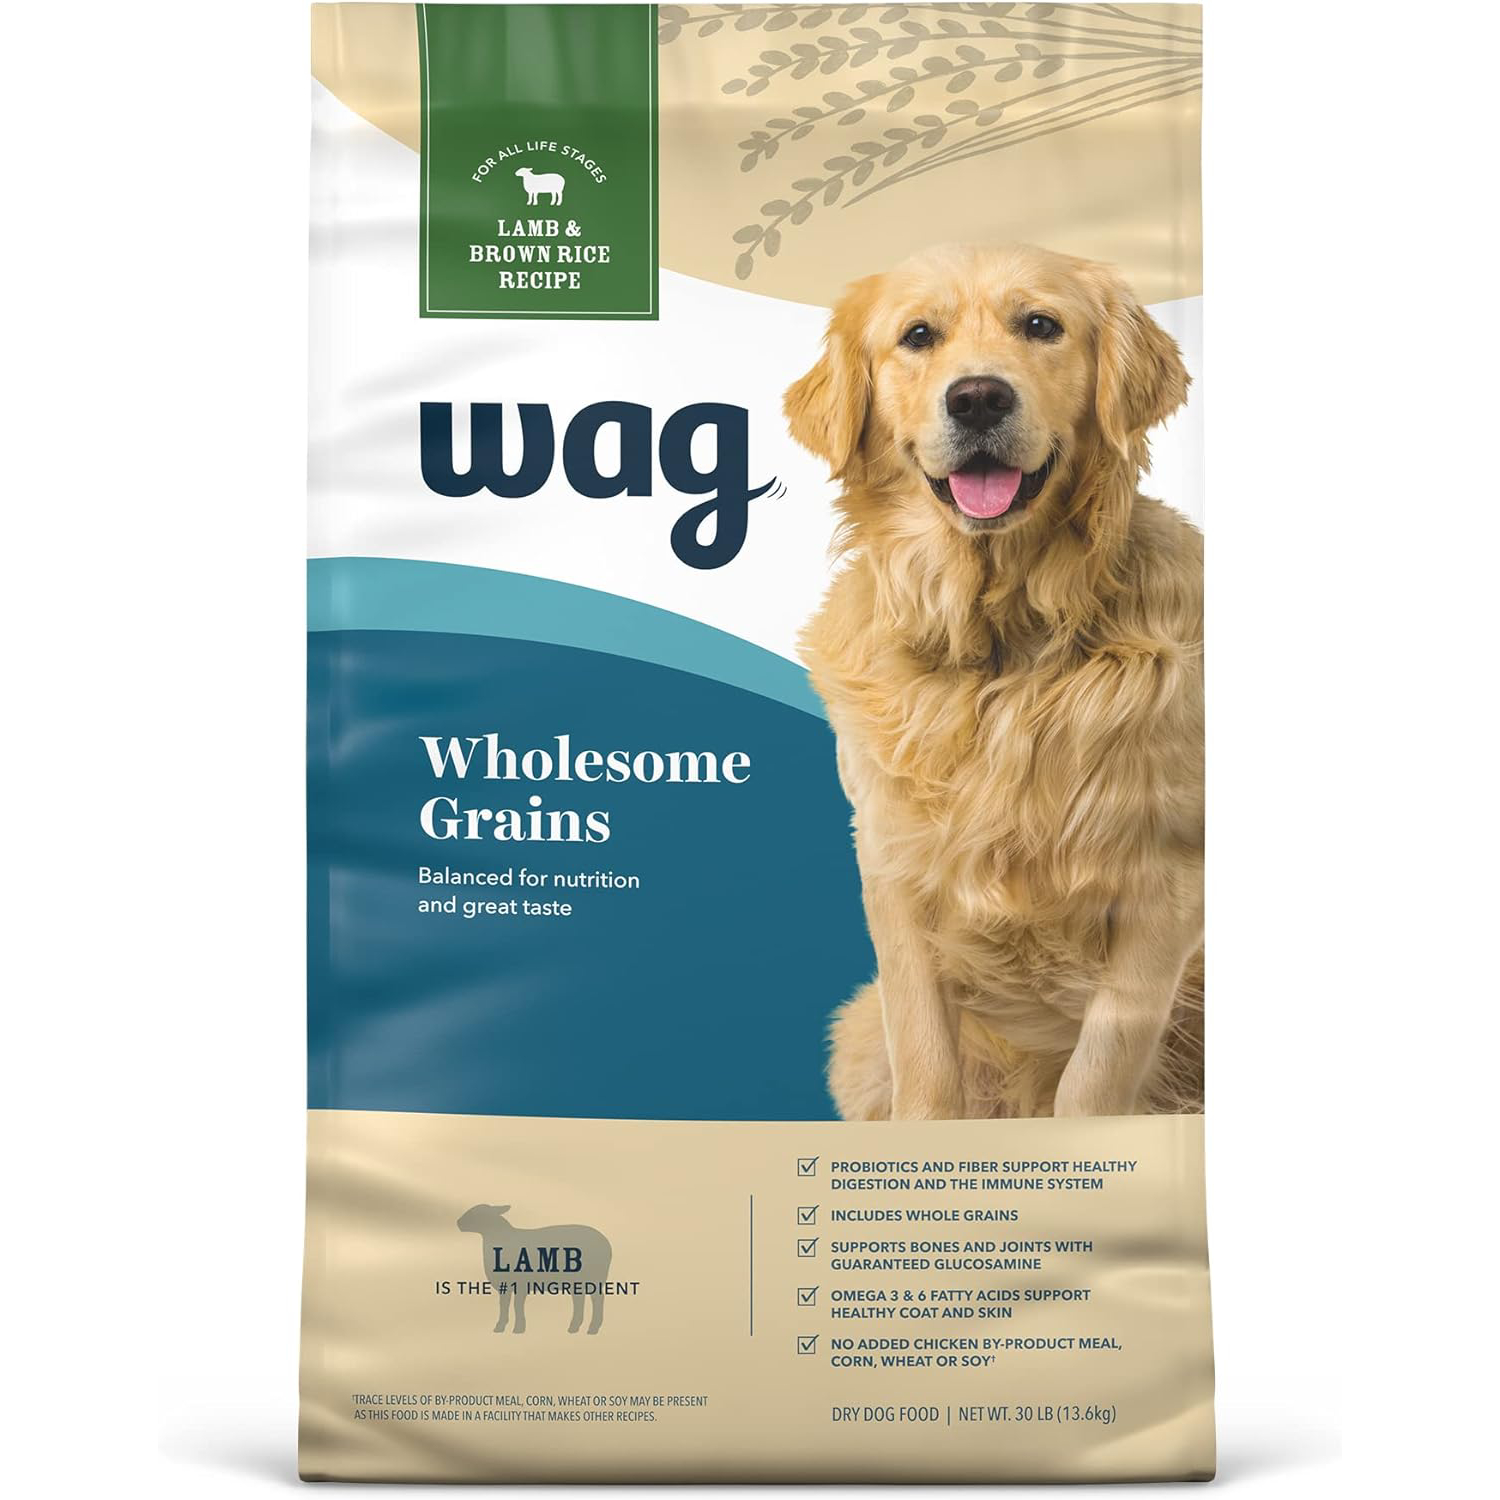 Wag Dry Dog Food